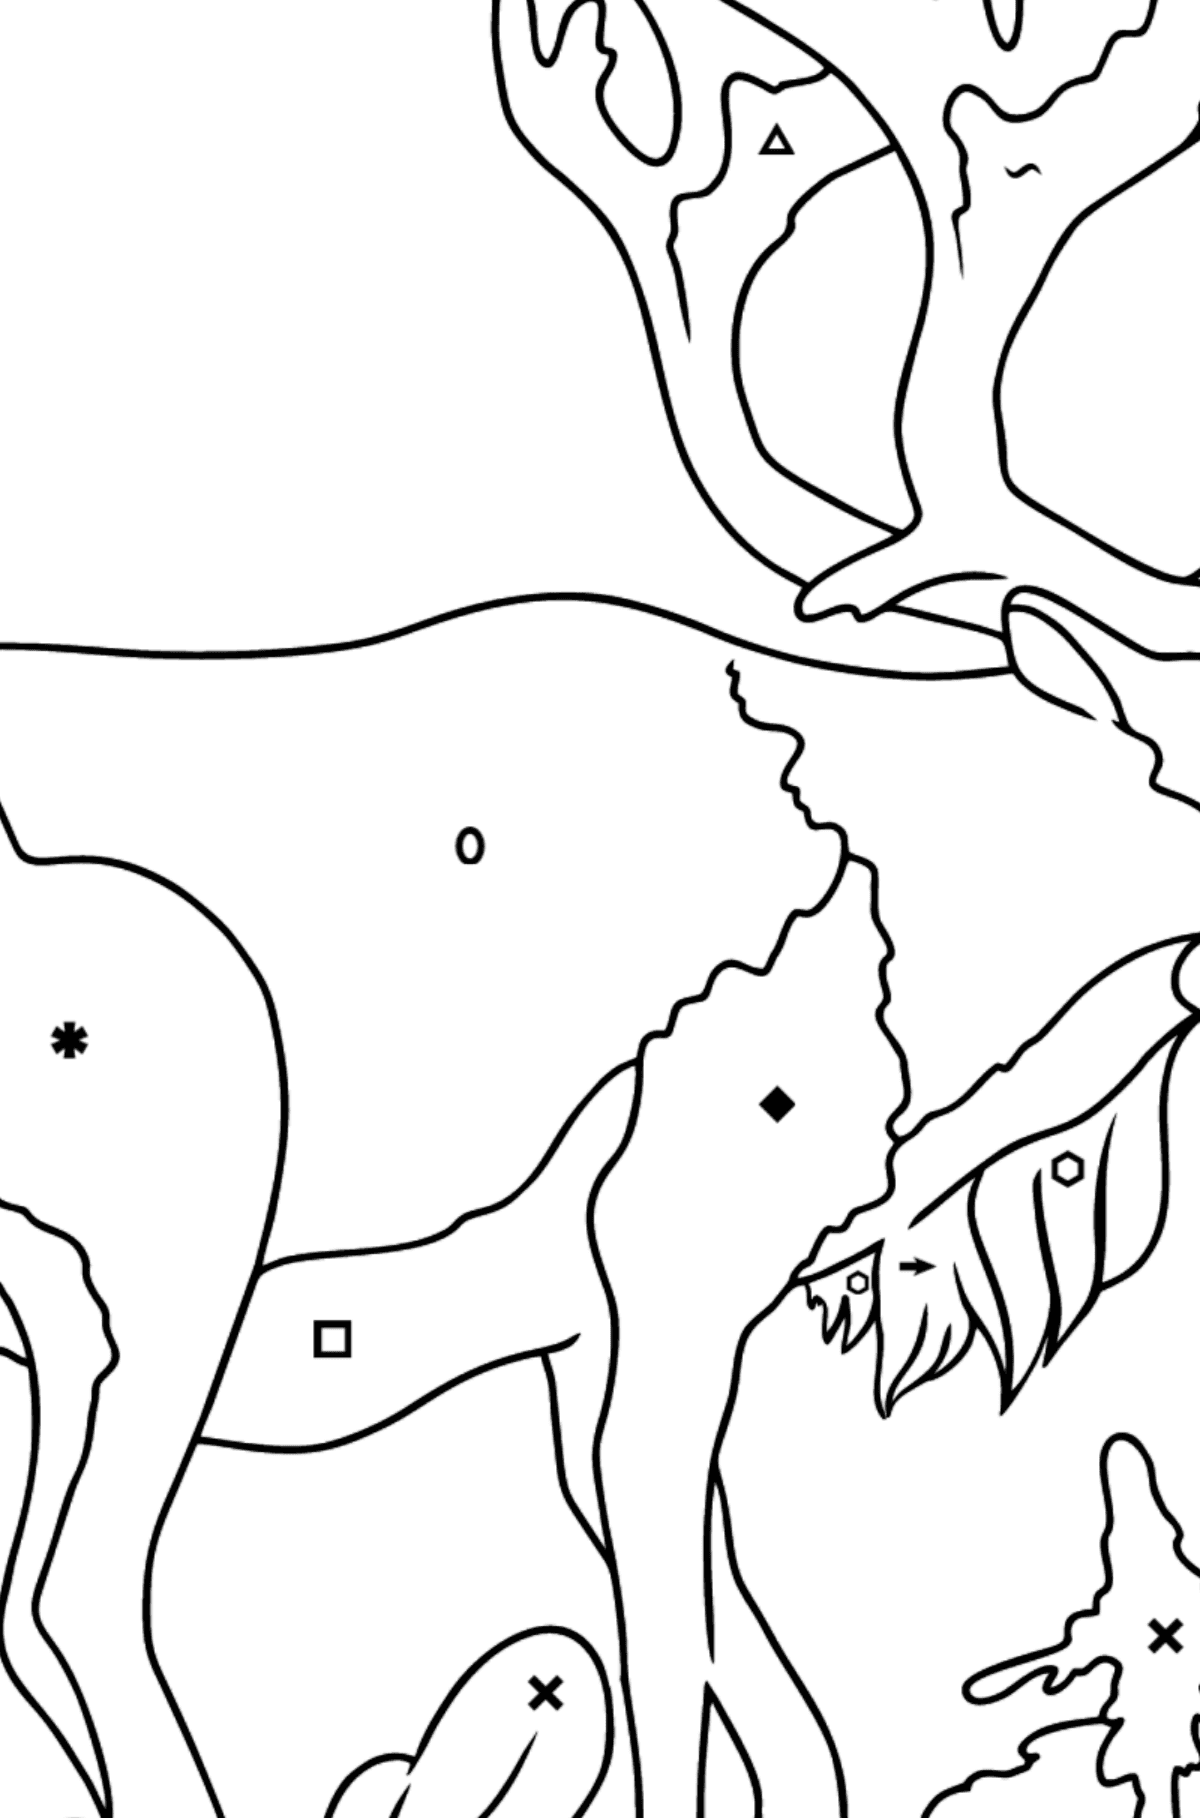 Desenho de cervo para colorir - Colorir por Símbolos para Crianças